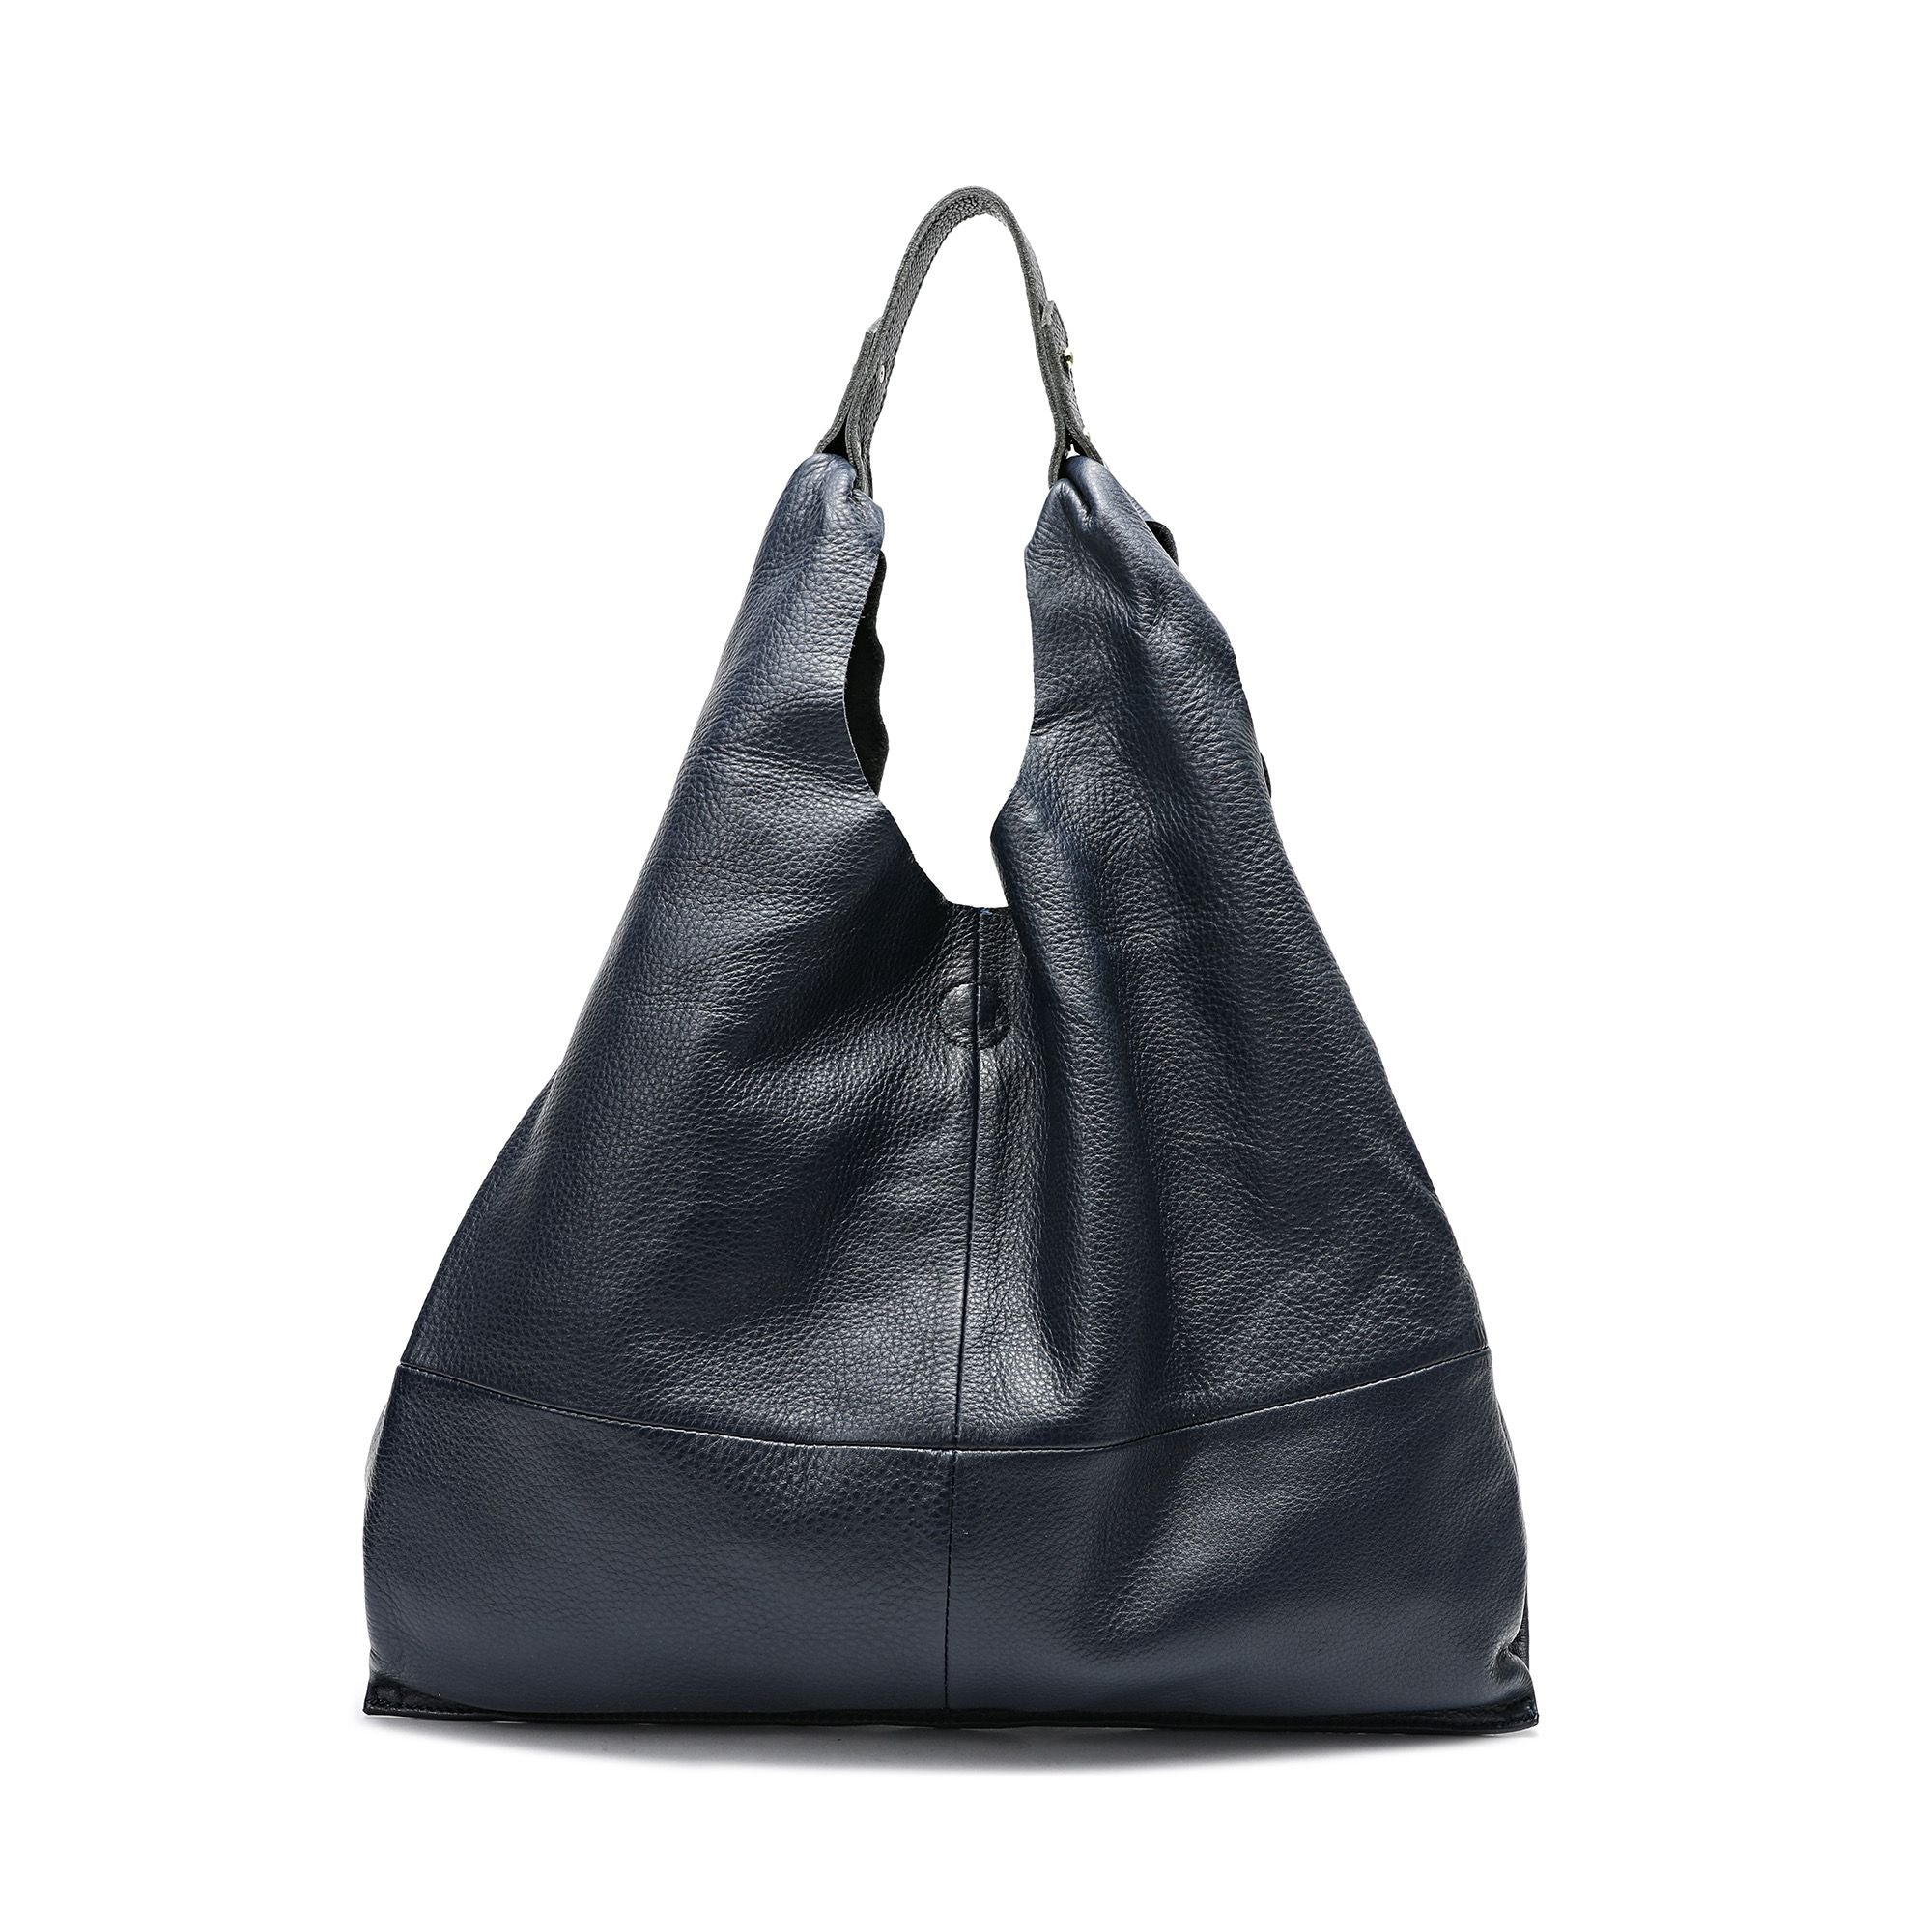 Lapsting Hobo Handbags for Women Purses Large 3pcs Set India | Ubuy